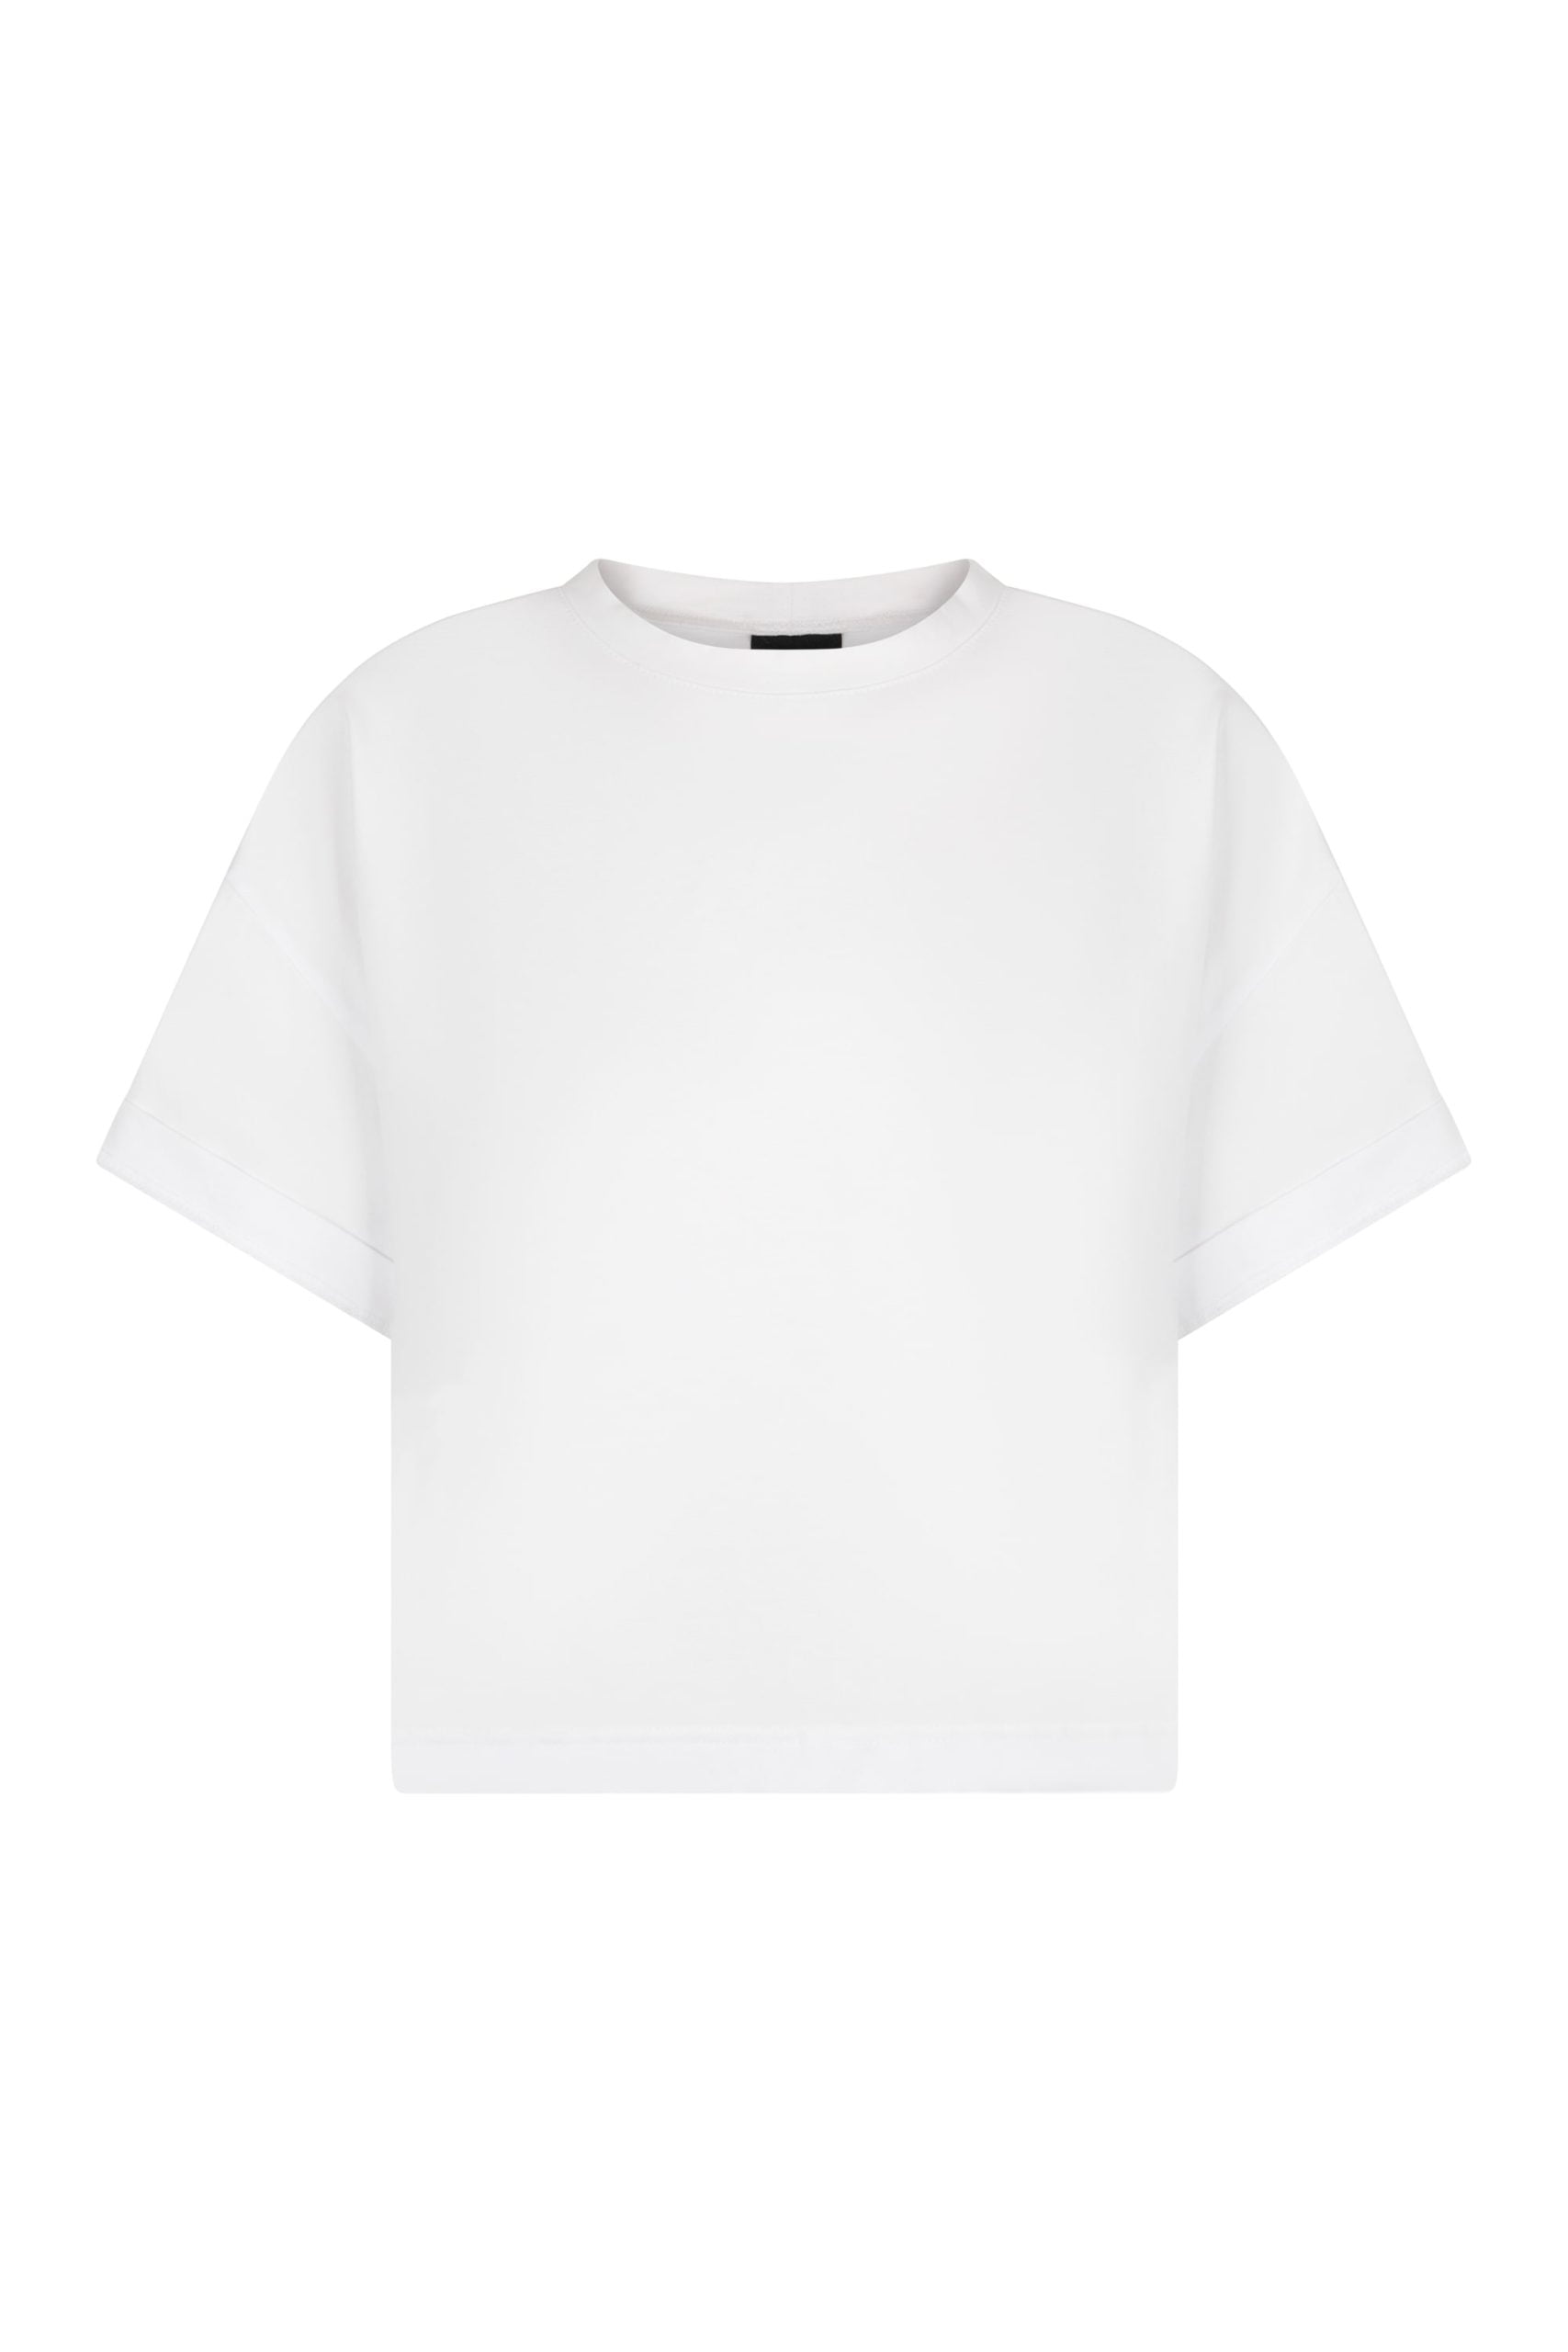 biały t-shirt damski